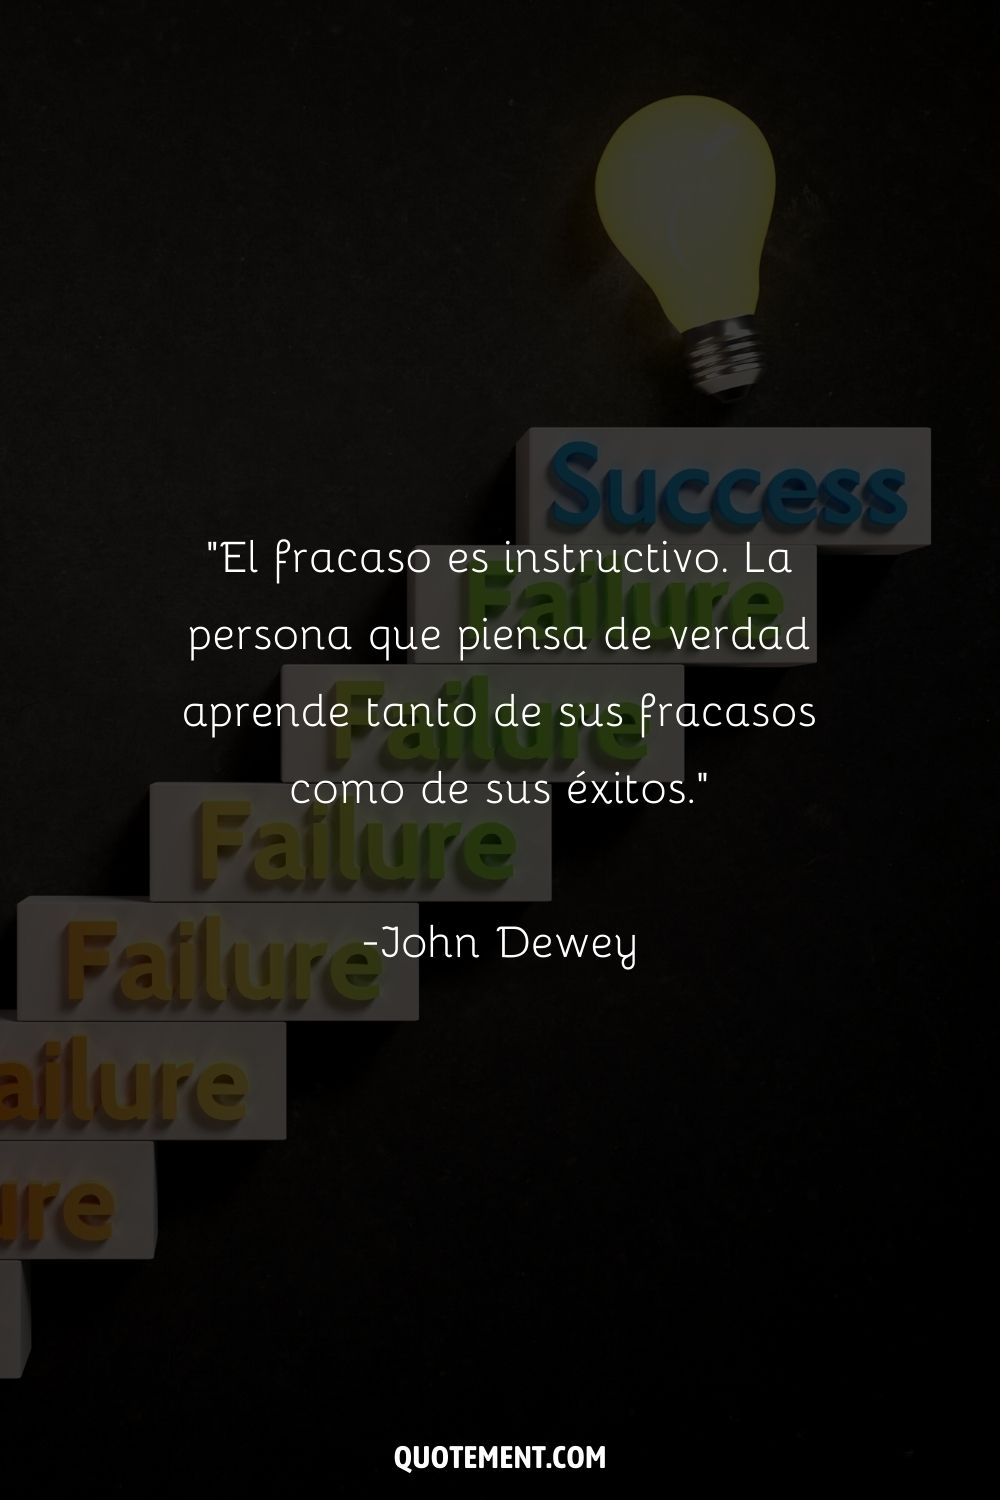 "El fracaso es instructivo. La persona que piensa de verdad aprende tanto de sus fracasos como de sus éxitos." - John Dewey